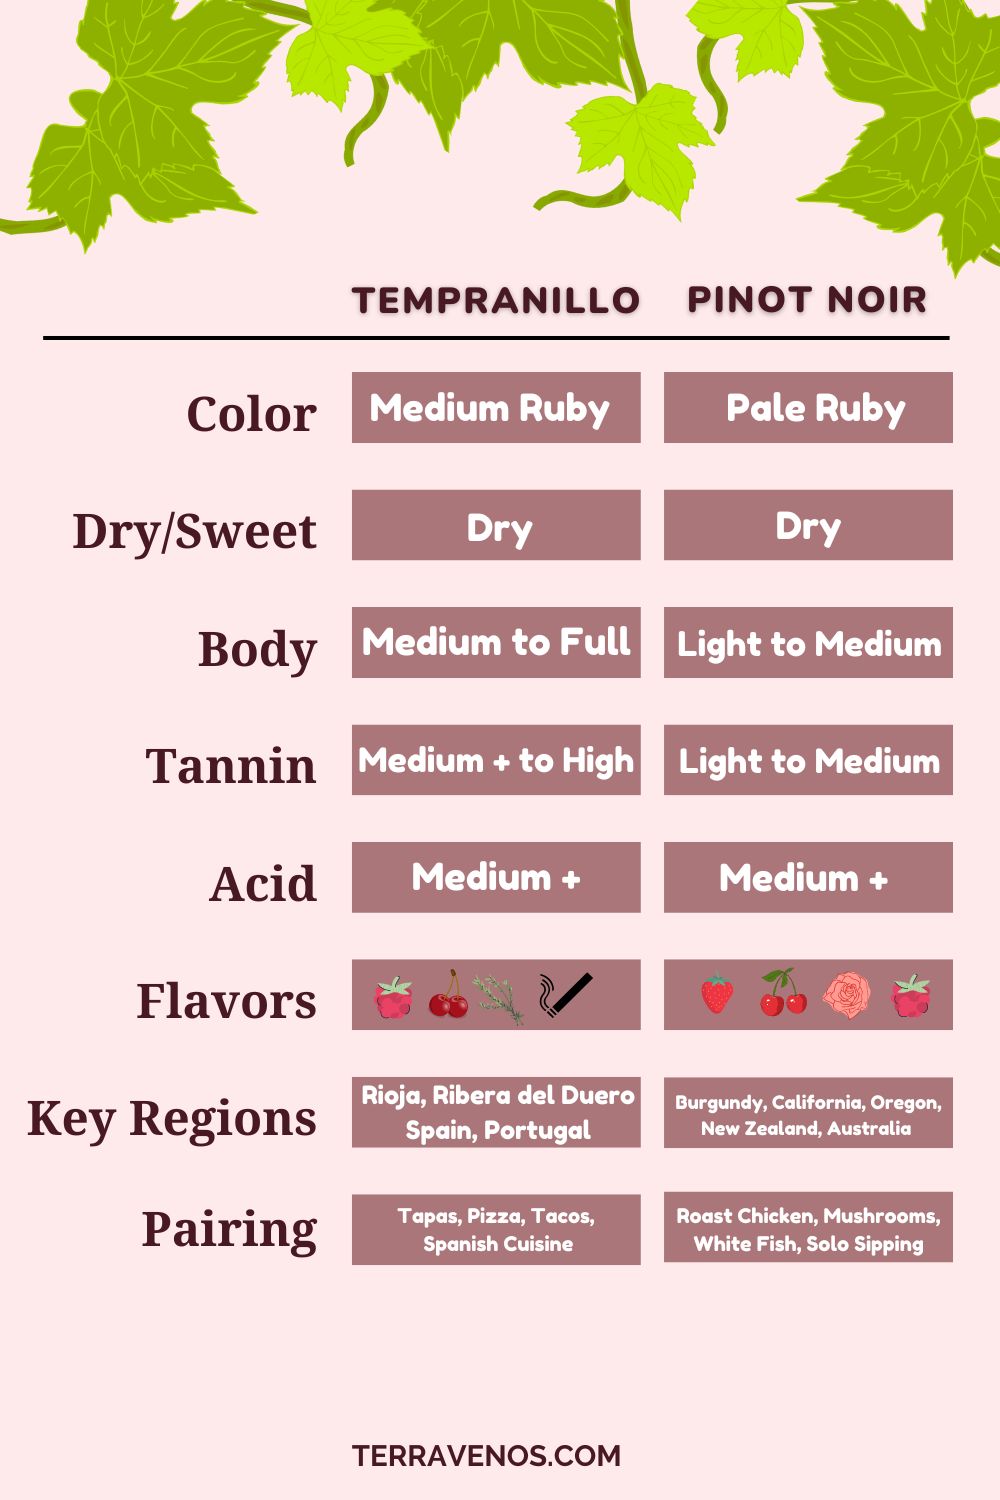 tempranillo-vs-pinot-noir-wine-comparison-infographic